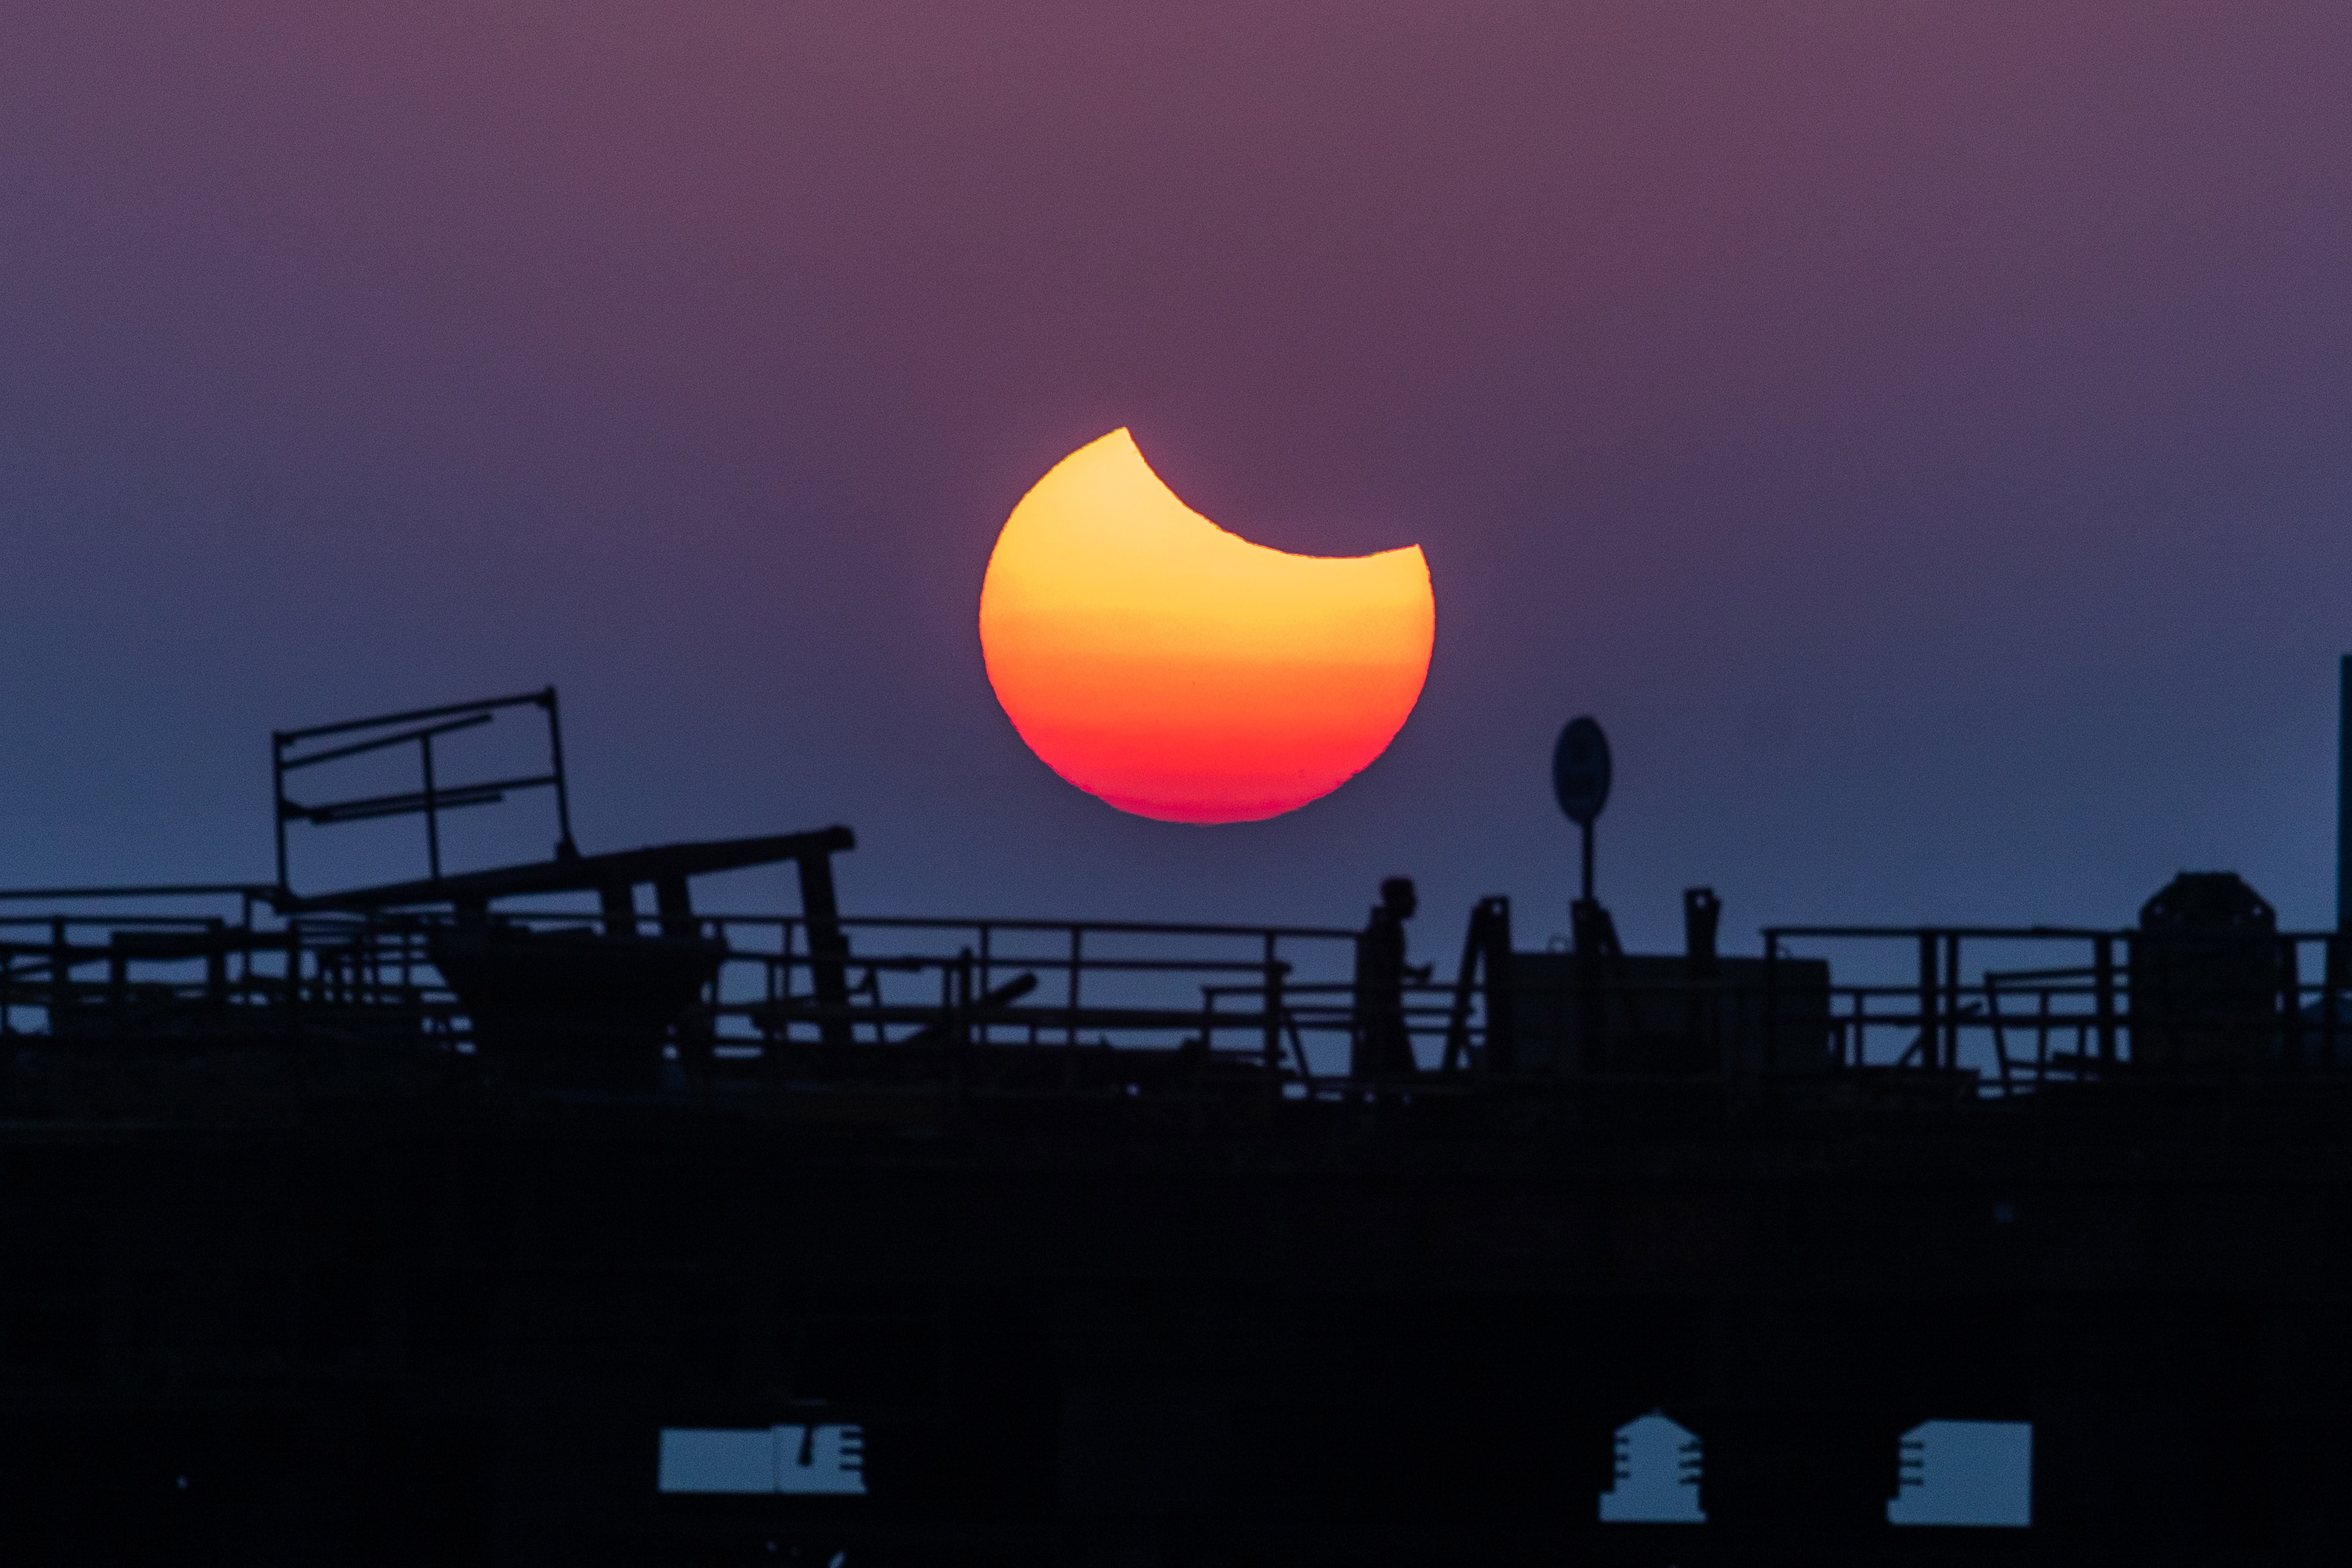 Un eclipse solar parcial se produce cuando una parte de la Tierra es engullida por la sombra ( penumbra) proyectada por la Luna cuando pasa entre nuestro planeta y el Sol en alineación imperfecta. (Foto Prensa Libre: EFE)